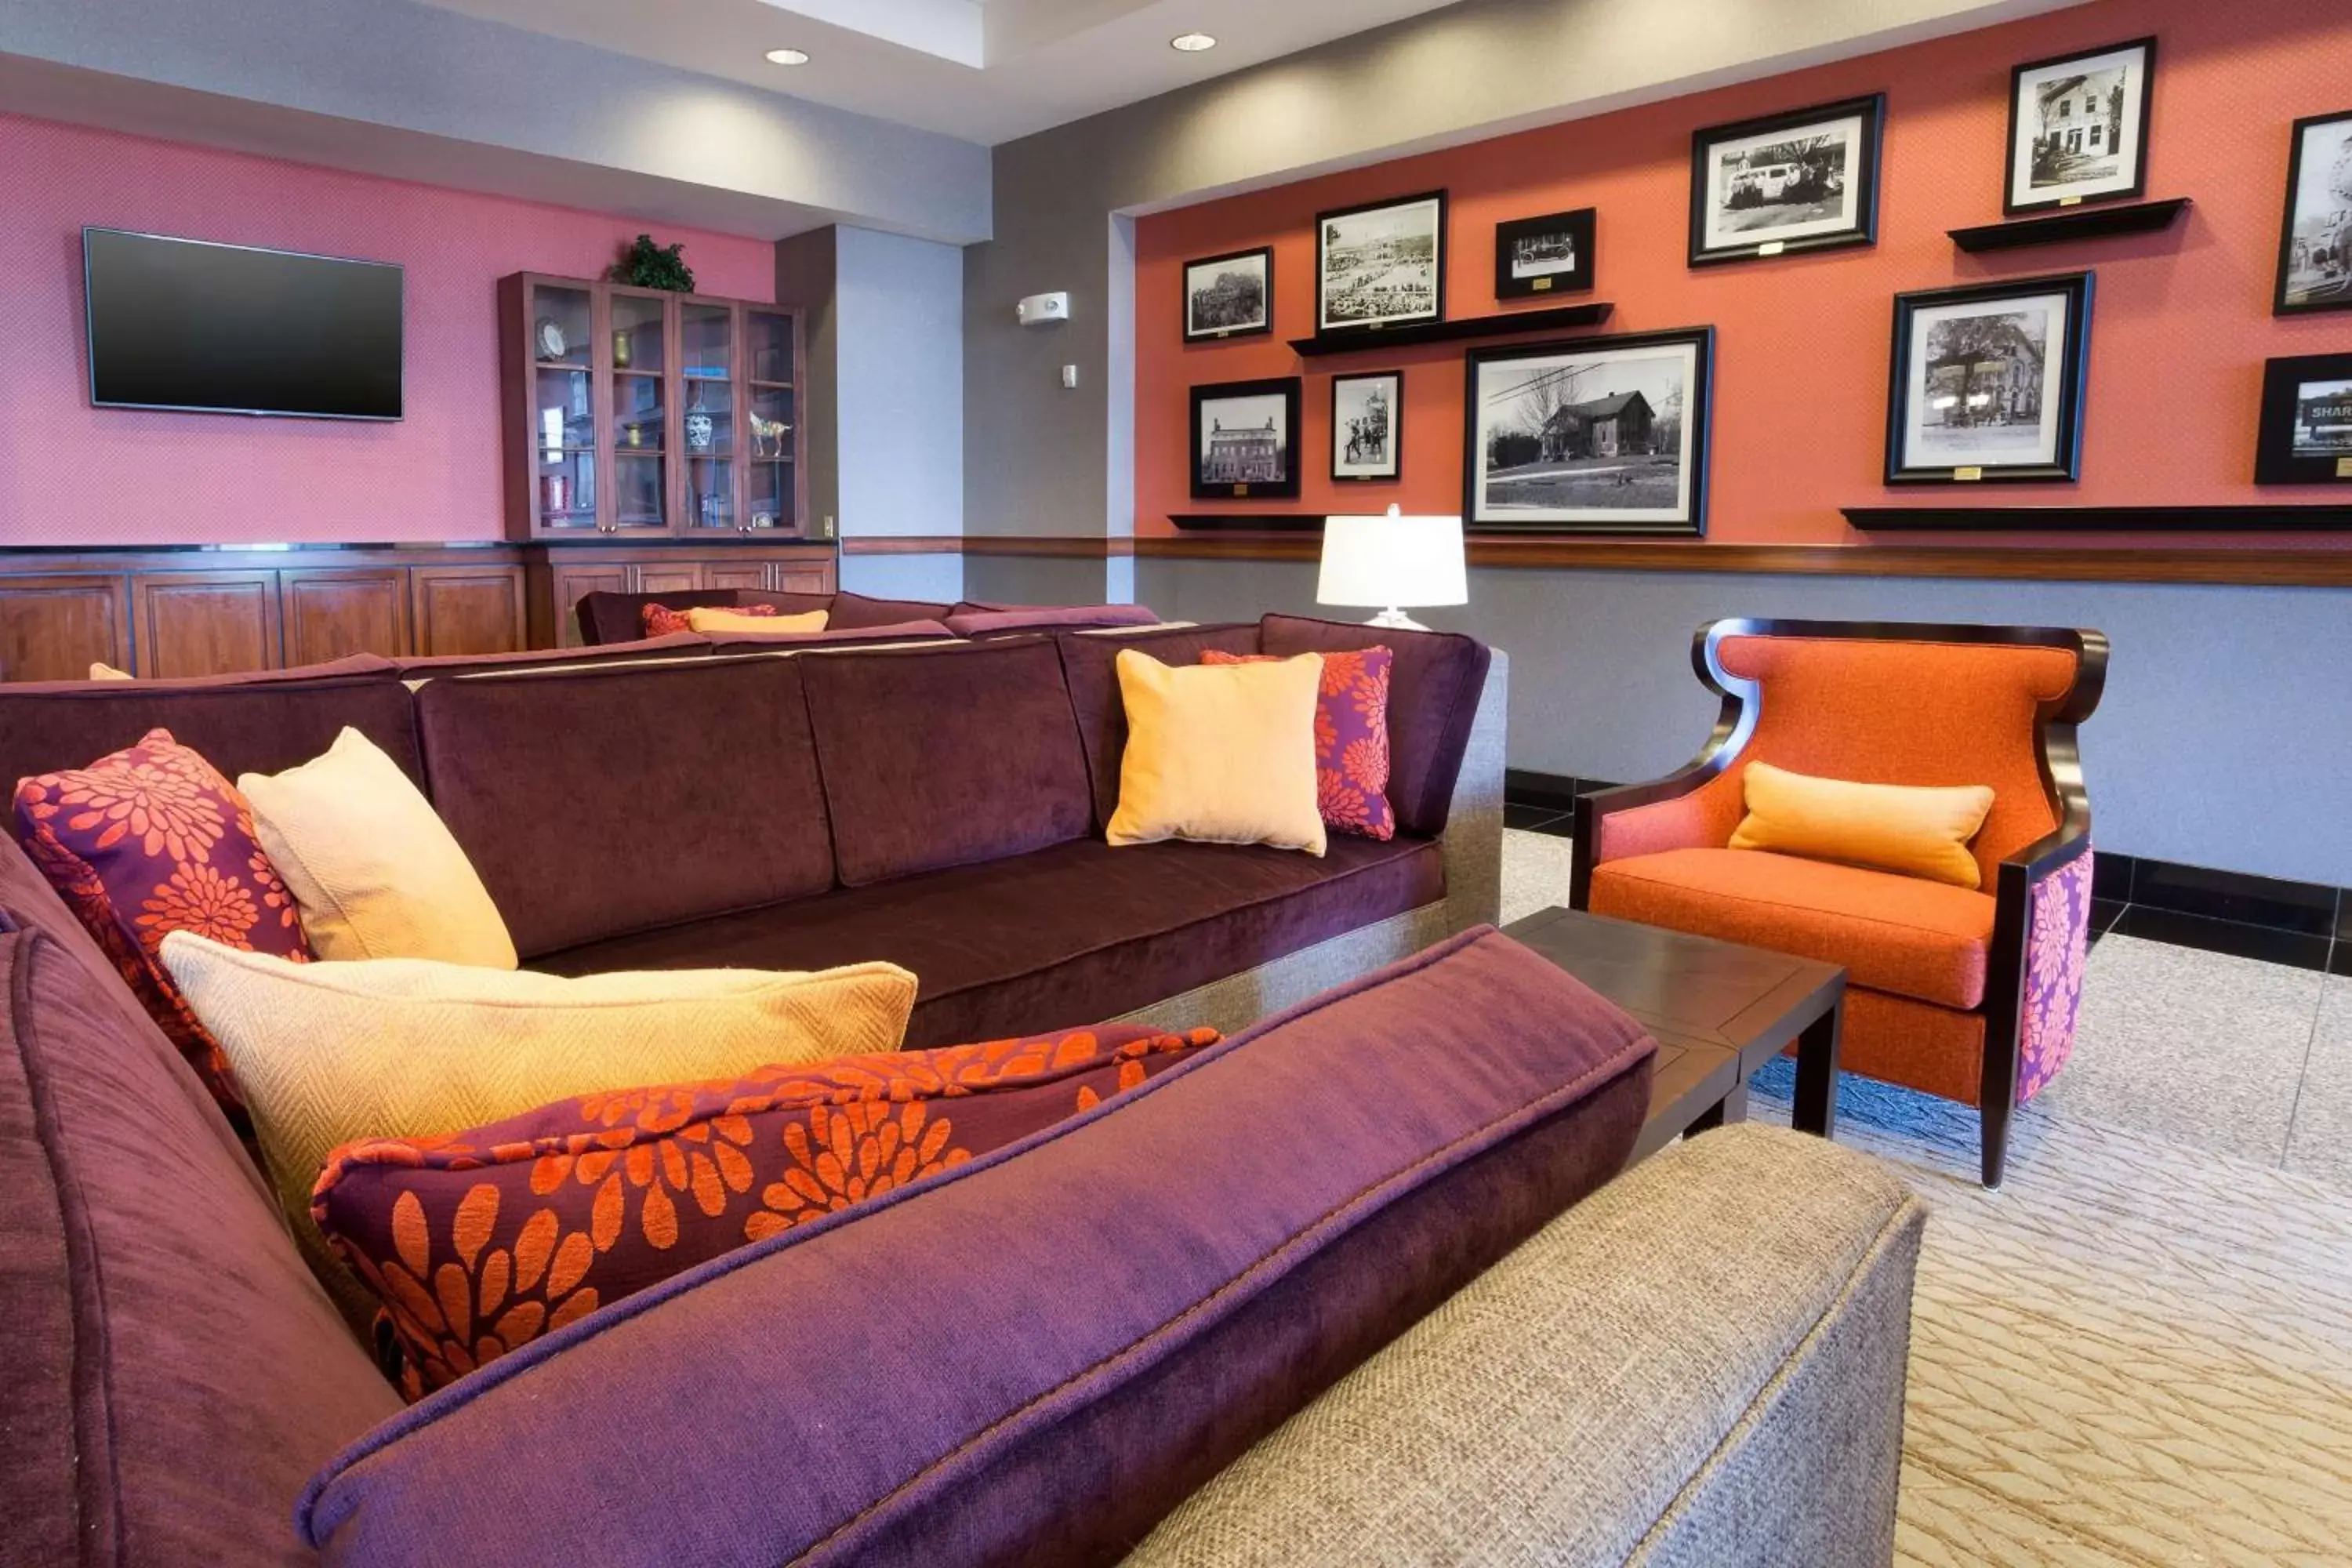 Lobby or reception in Drury Inn & Suites Cincinnati Sharonville